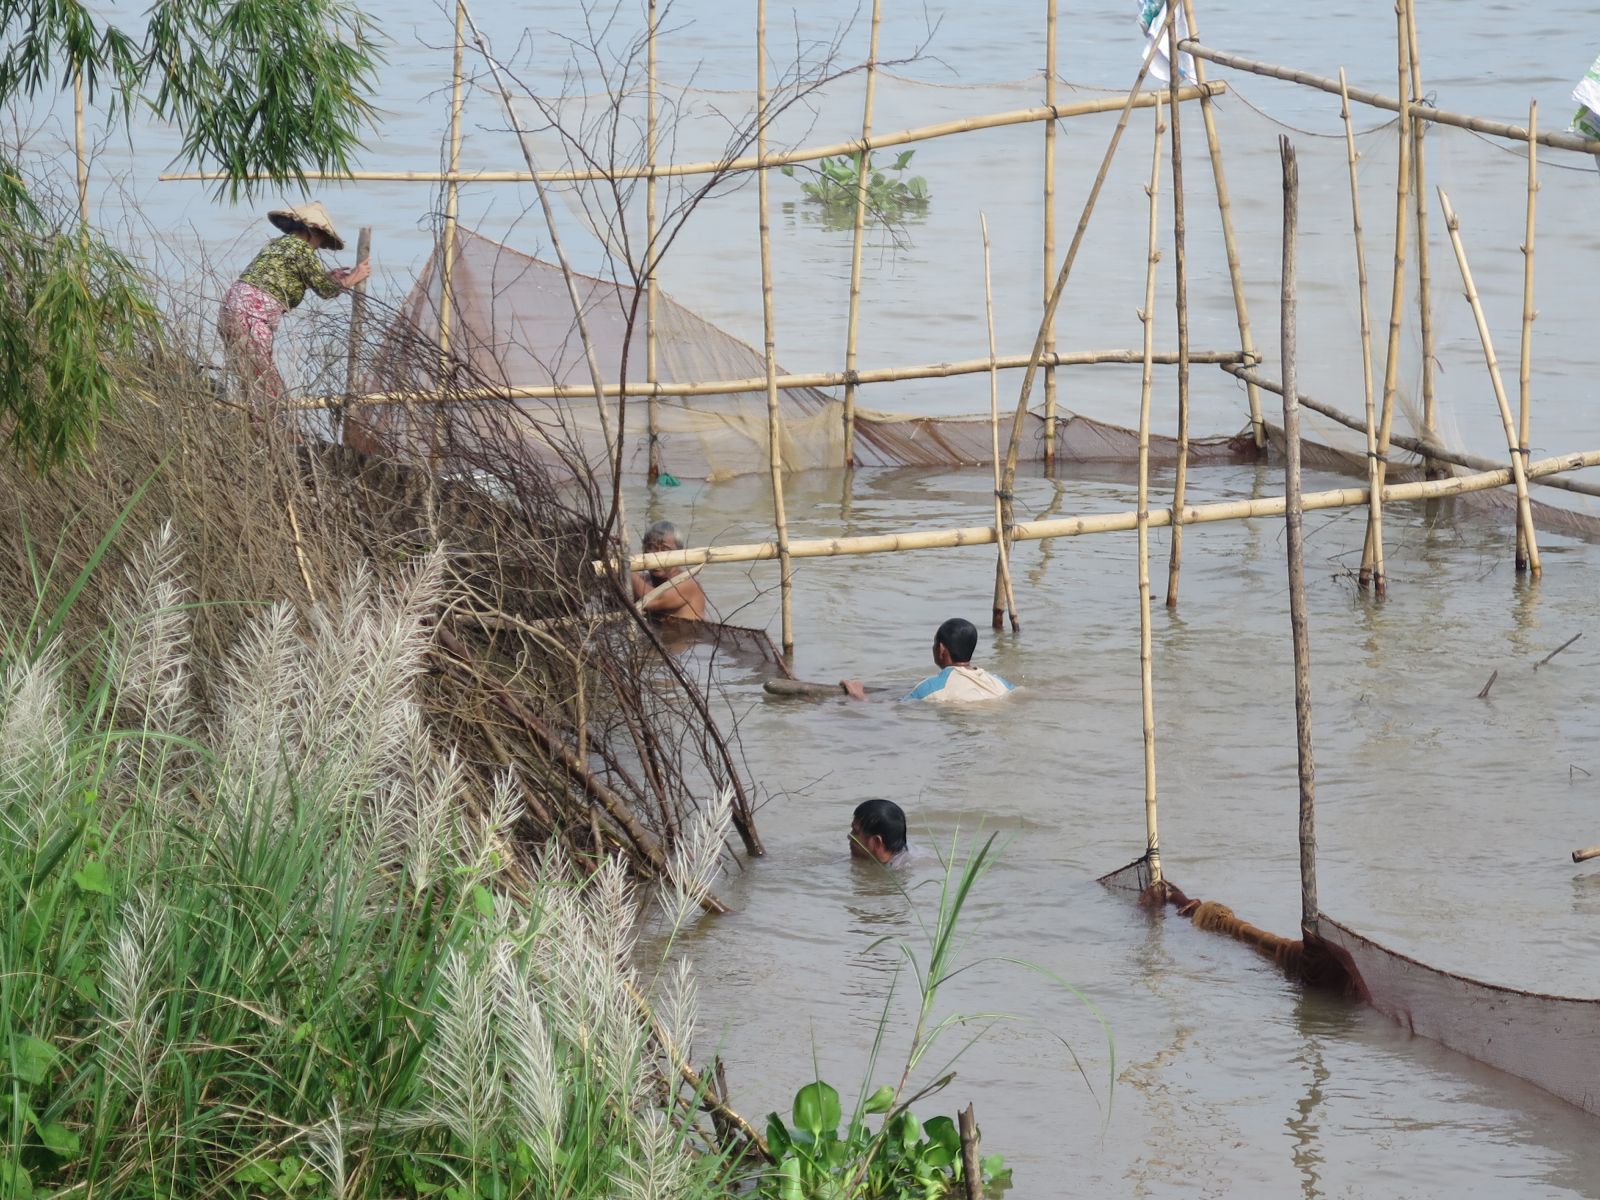 Nguyên liệu làm khô cá được thu mua từ người dỡ chà, giăng câu, chài lưới trên sông nước Đồng Tháp Mười